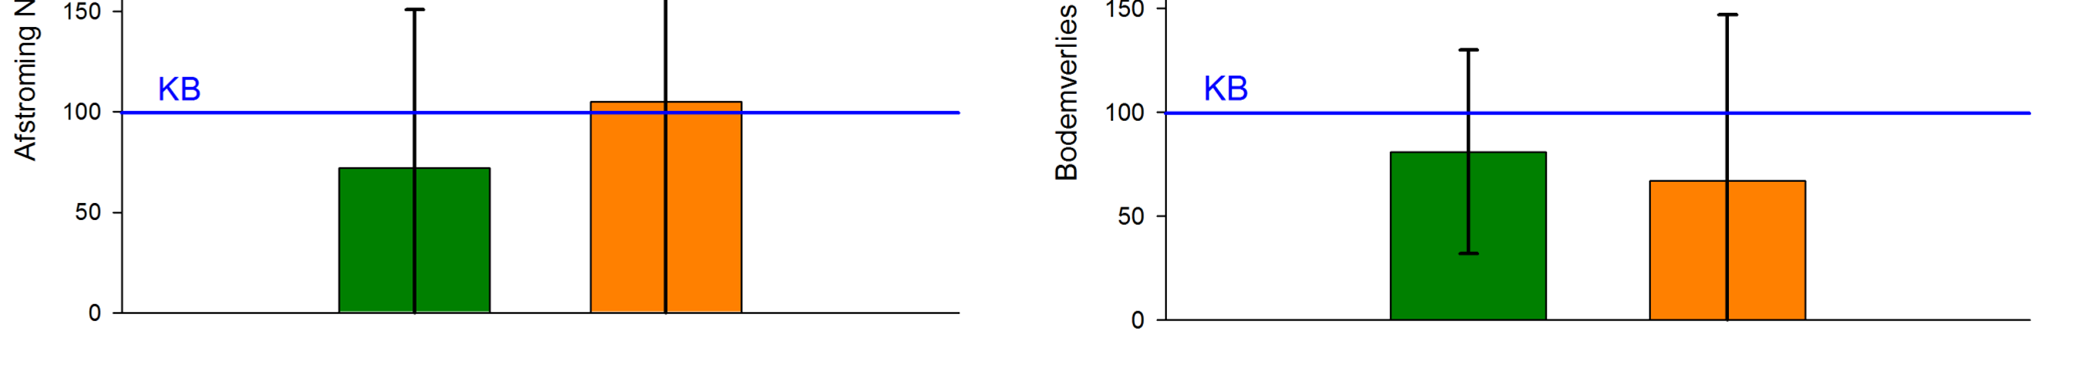 Effect op bodemerosie Neerslag en afstroming uitgedrukt als een verhouding van NKB tot KB (%) voor de jaren